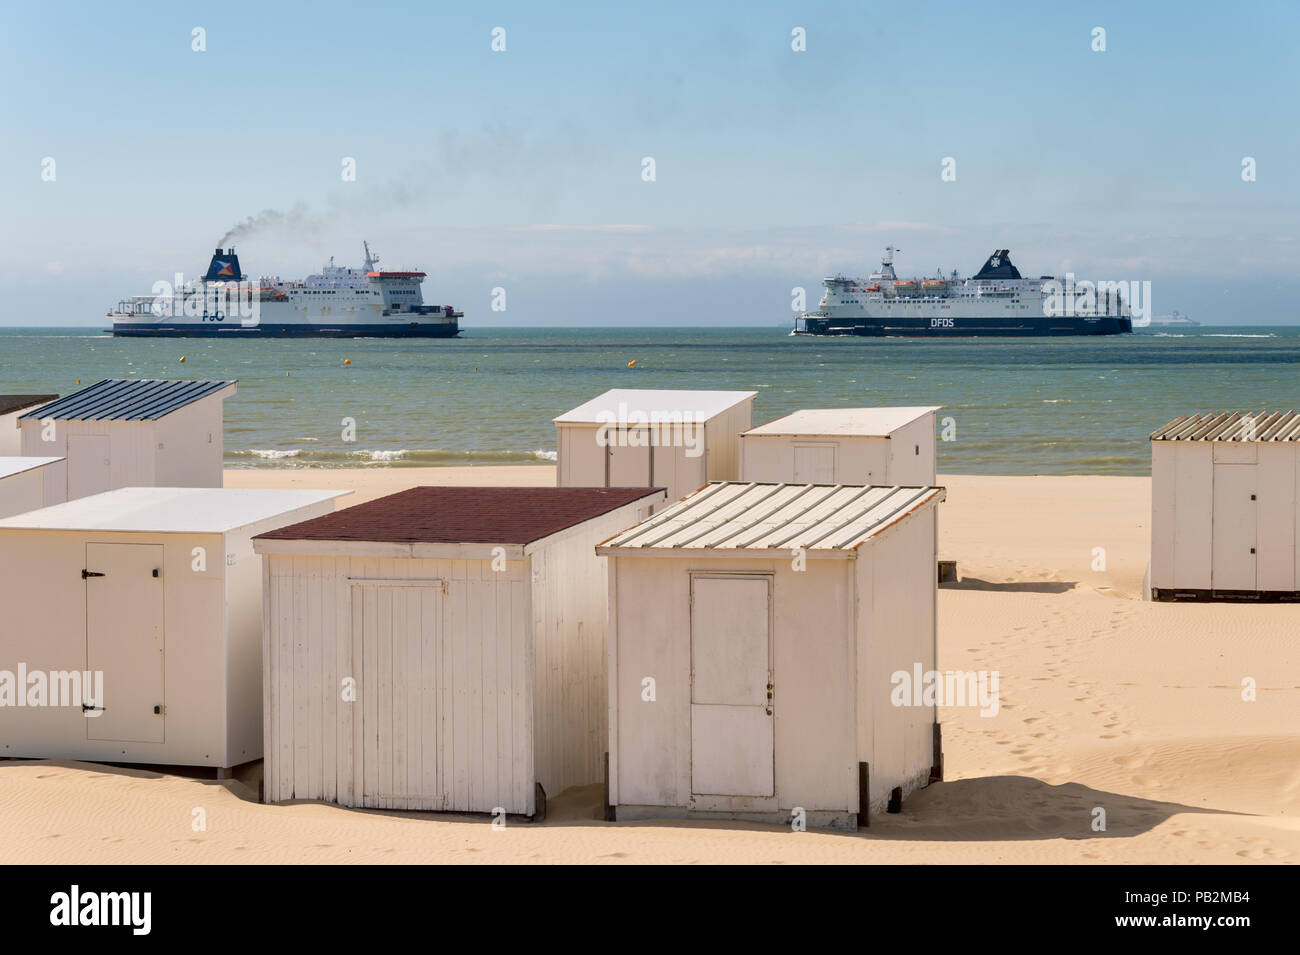 Calais, France - 19 juin 2018 : cabines de plage et DFDS / P&O ferries qui traversent la Manche. Banque D'Images